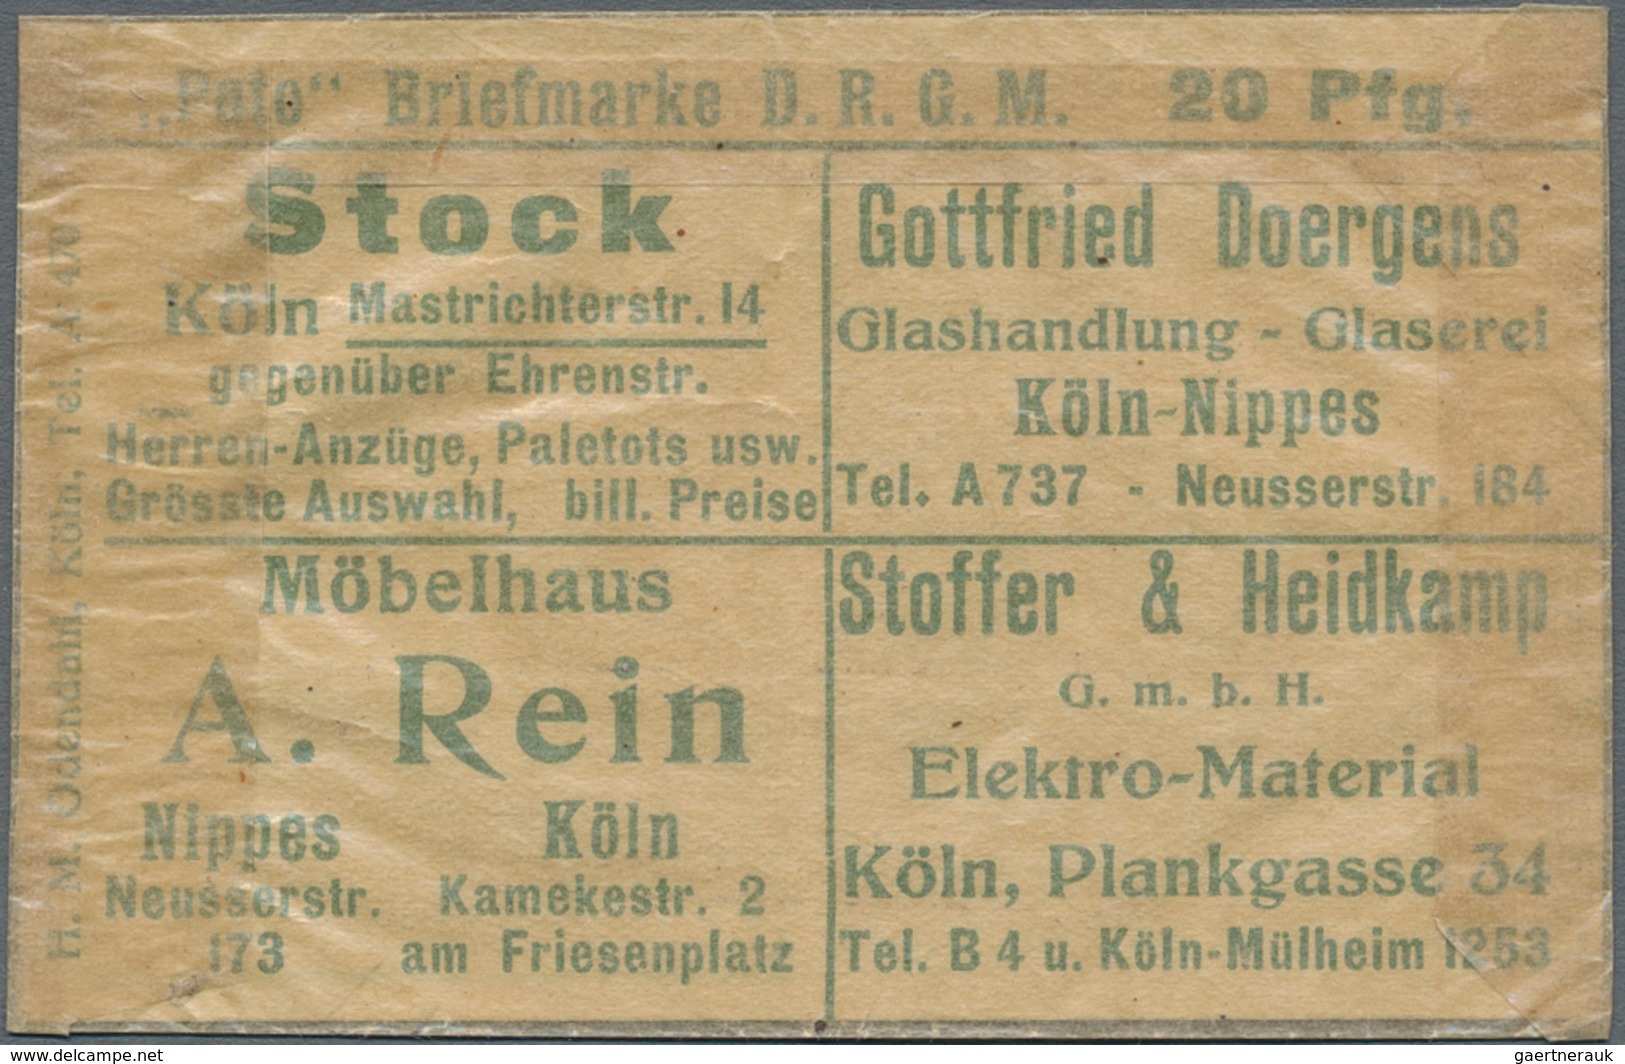 Deutschland - Briefmarkennotgeld: Köln, M. W. A. Imhoff U.a., Briefmarkennotgeld Germania 20 Pf. Grü - Altri & Non Classificati